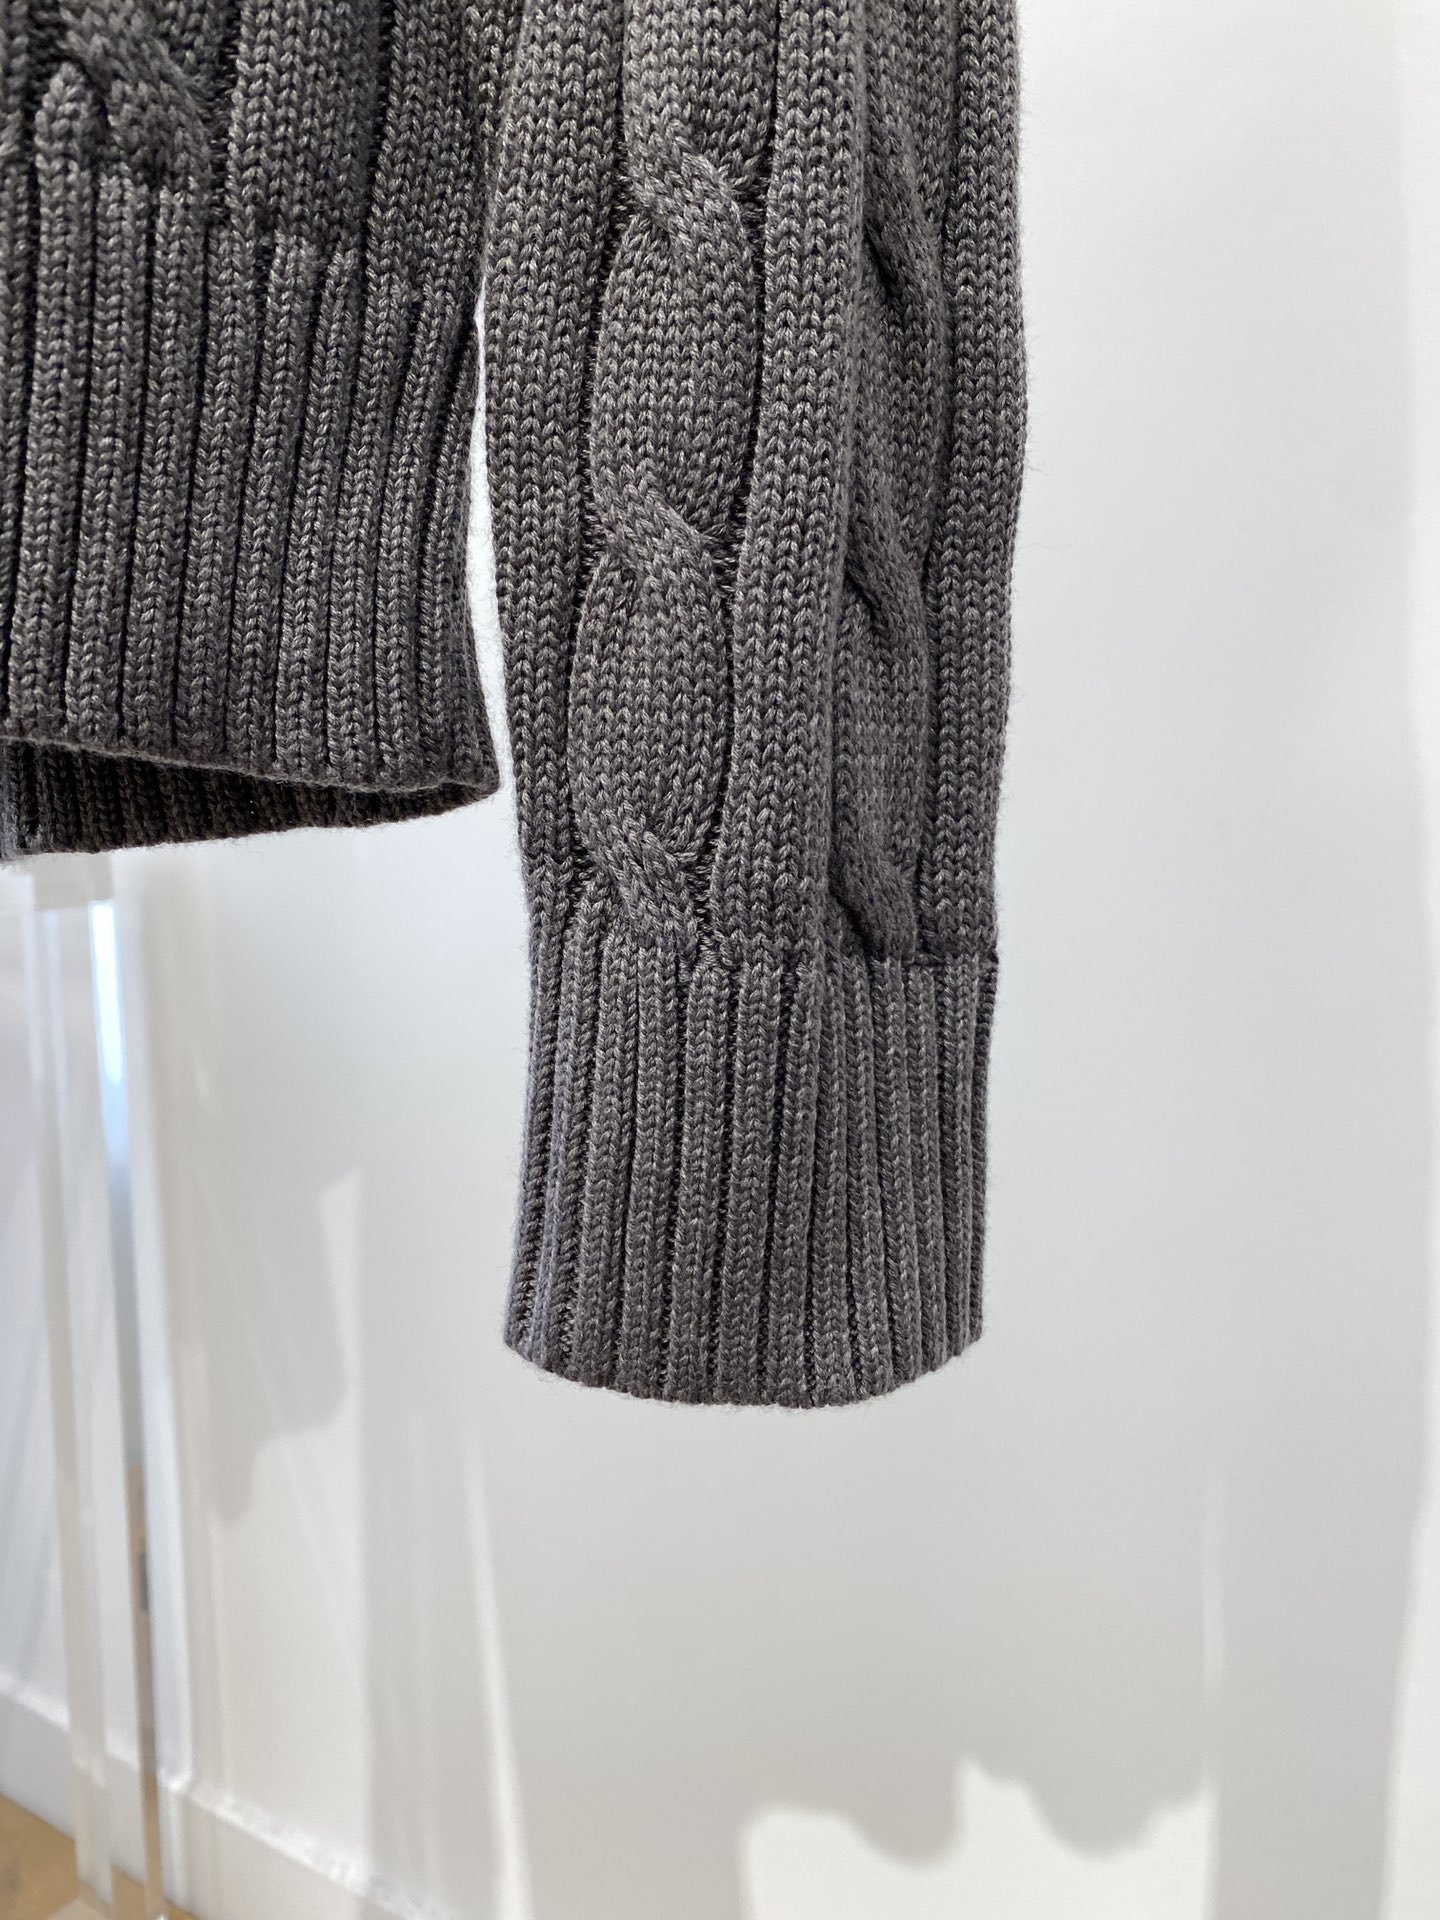 保罗2023秋冬新品羊毛衣具有手感细腻柔软可直接与肌肤接触让暖心的纱线变化出细腻的质感顶级工艺极具特色出